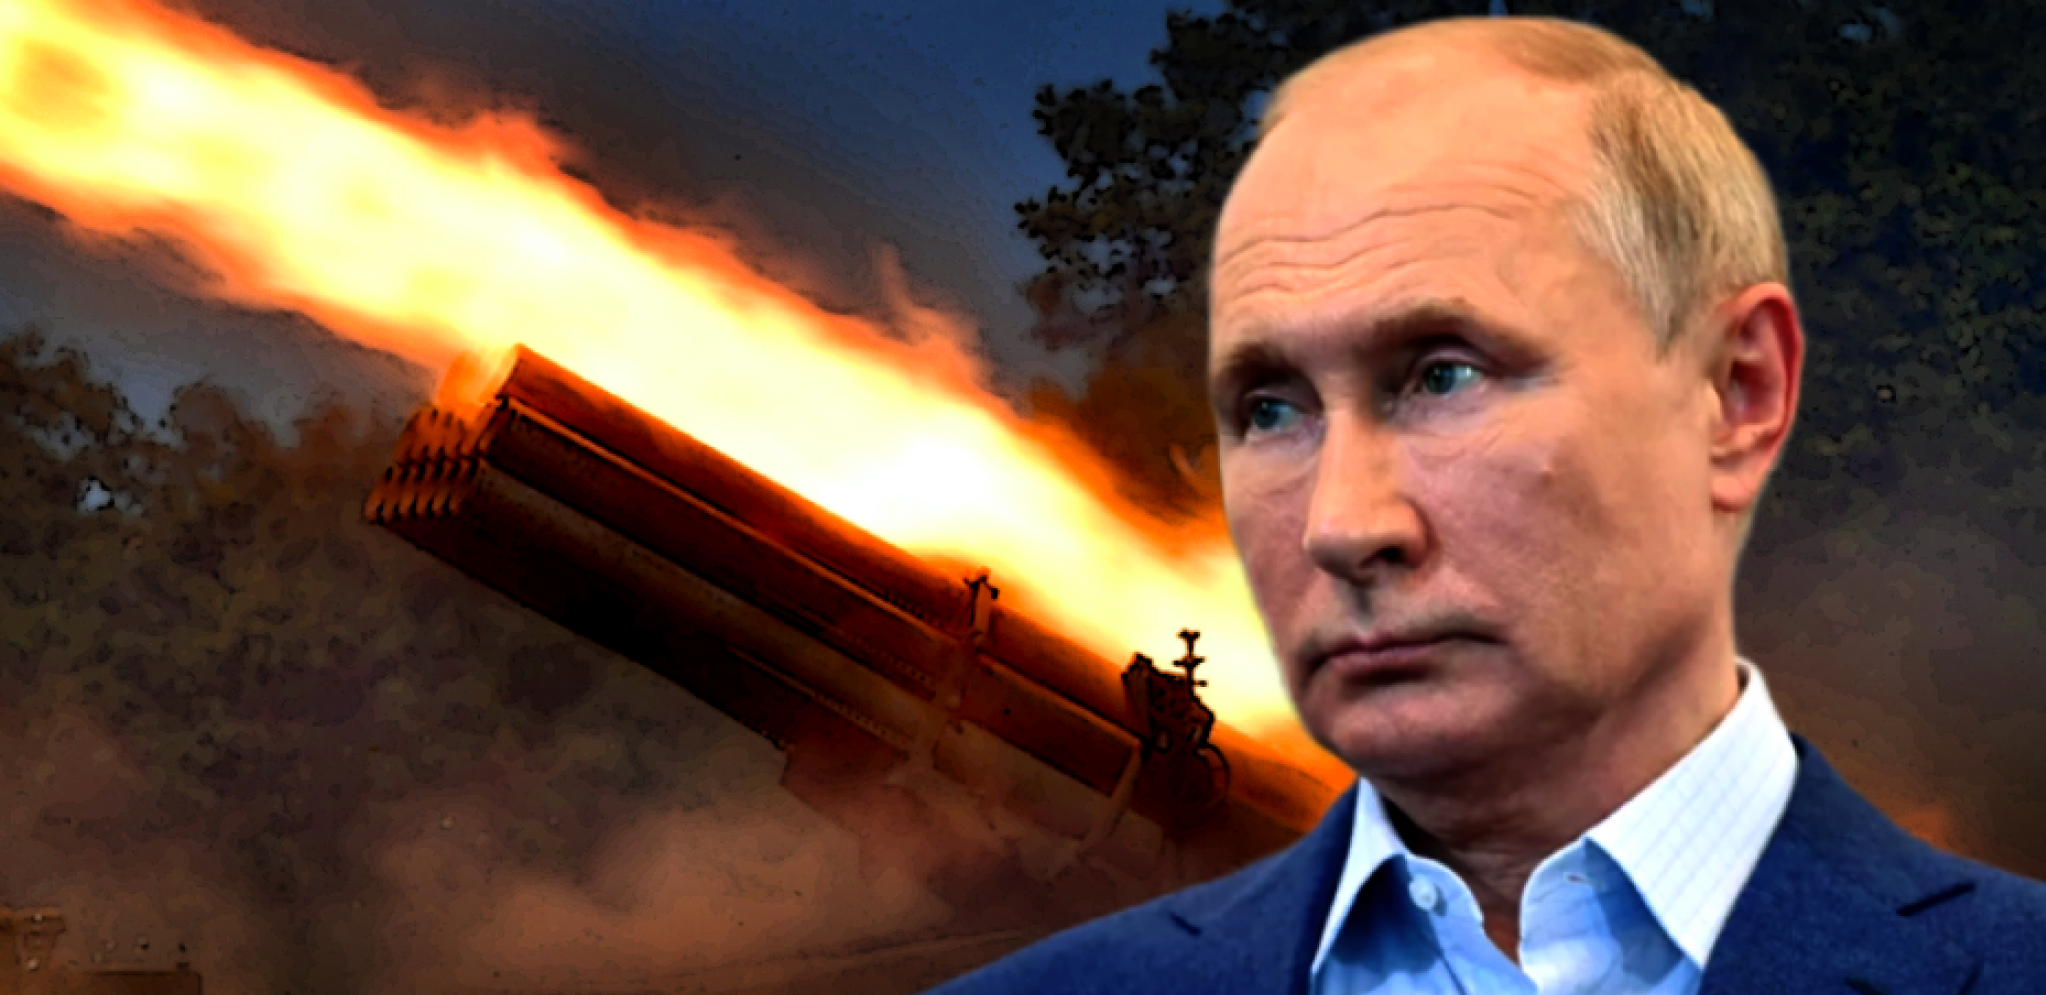 PRVI VELIKI PORAZ RUSIJE OD POČETKA RATA Jedan Putinov potez je otežao situaciju još više